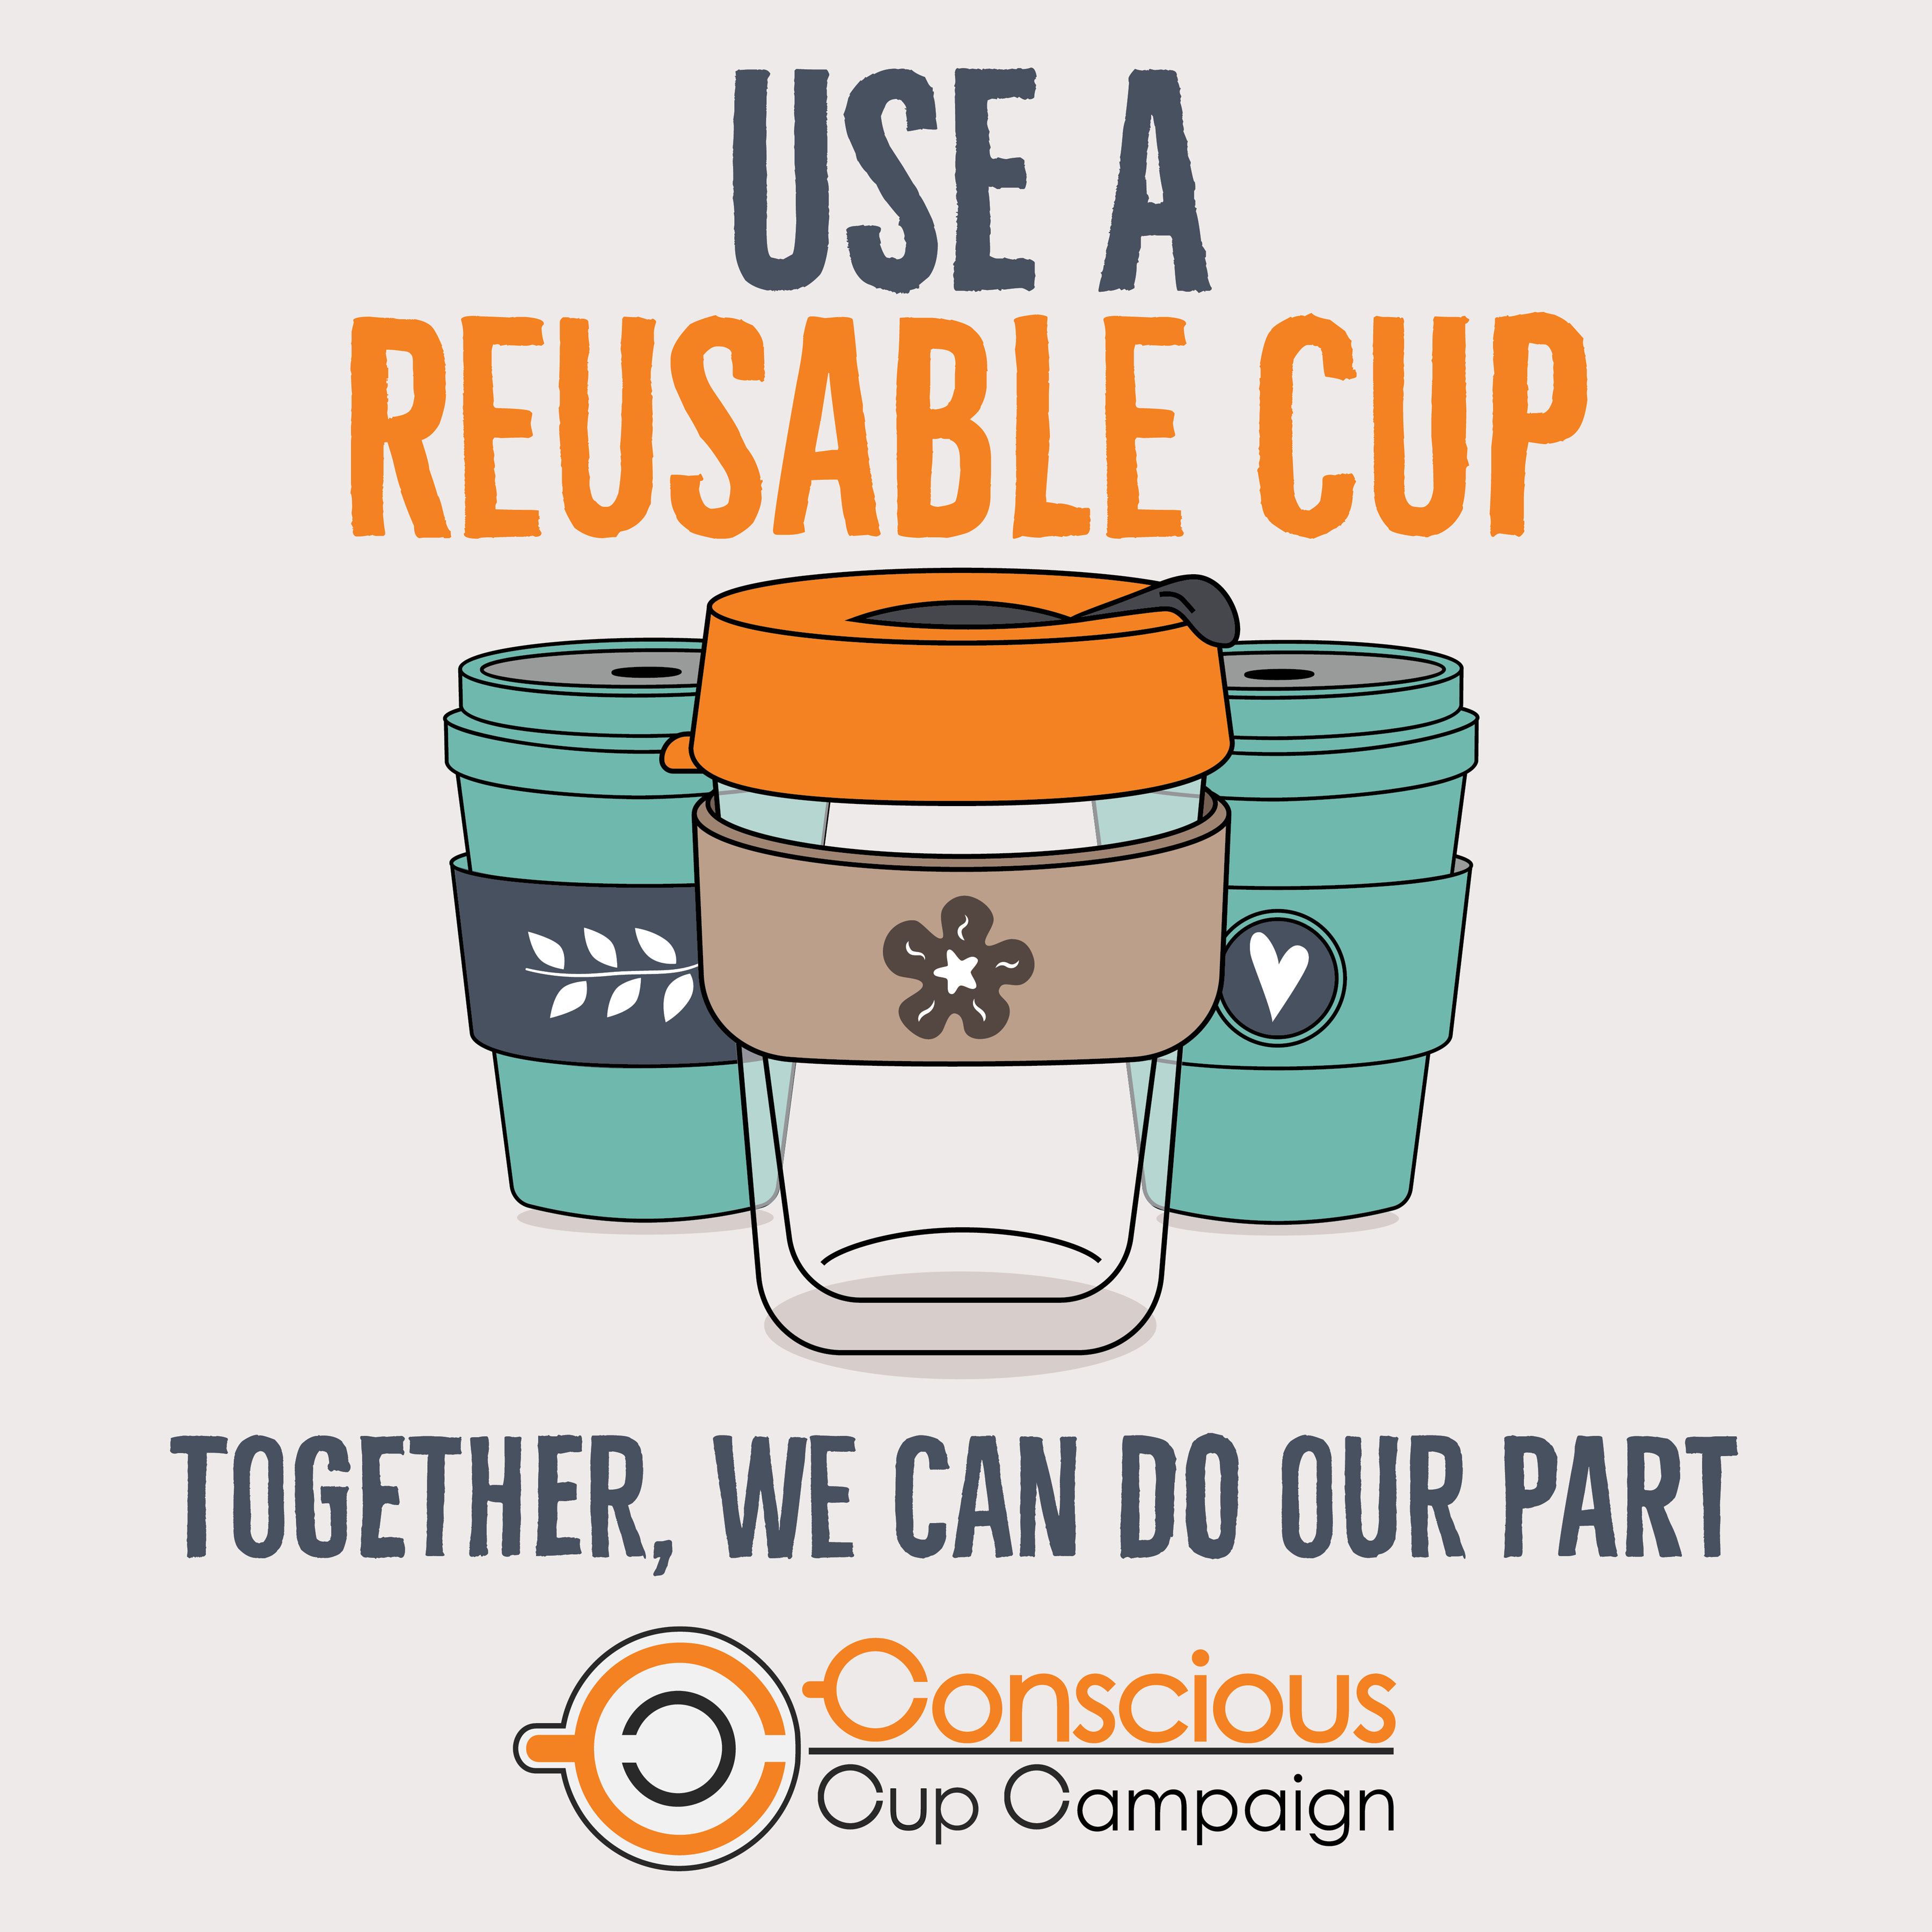 Insta, We Welcome Reusable Cups